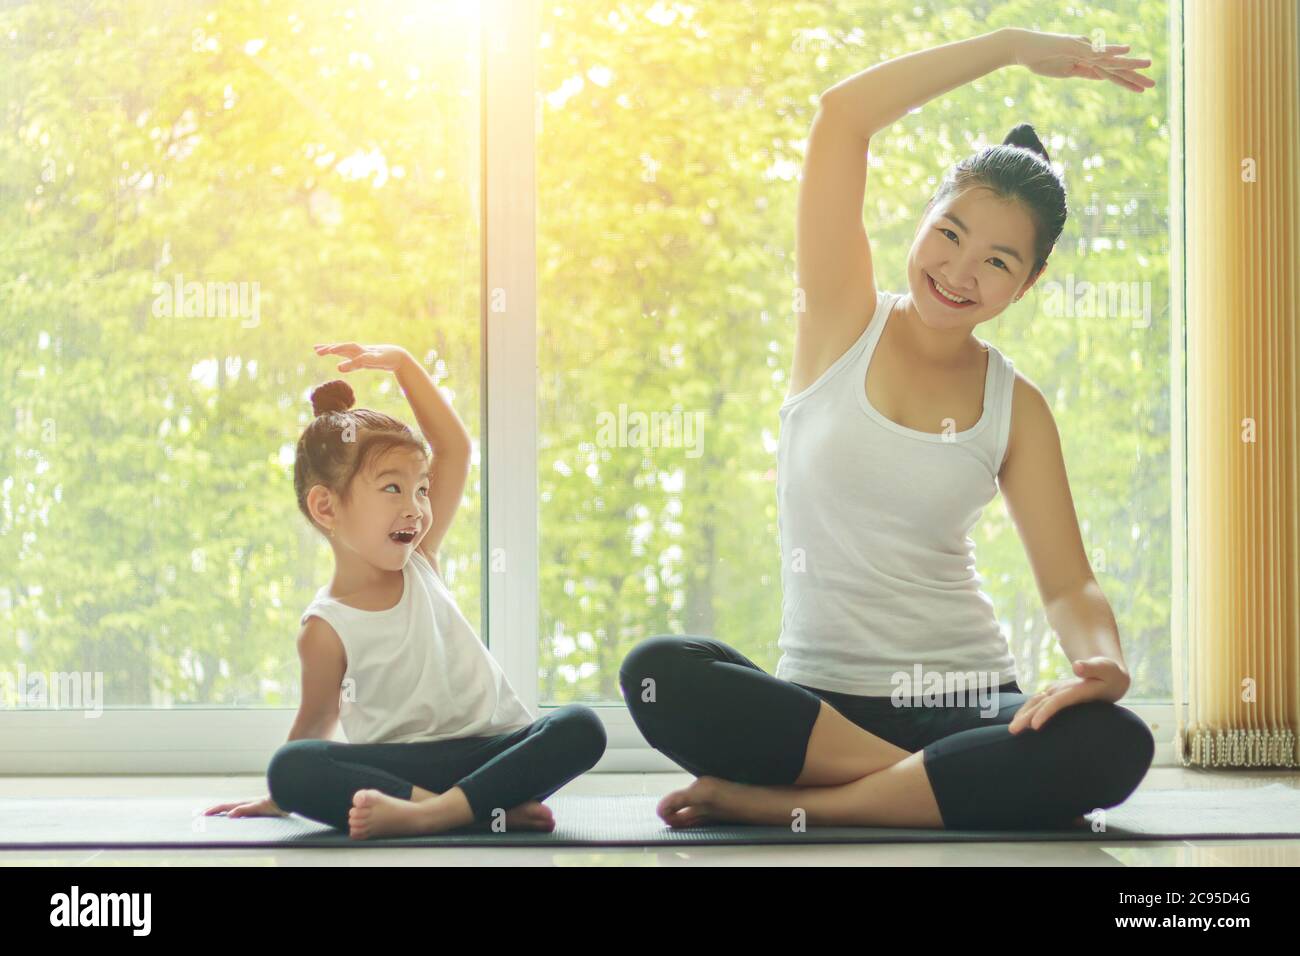 Une maman asiatique pratique le yoga à la maison avec une adorable fille assise à côté d'elle, essayant d'imiter la posture de la mère avec un visage souriant Banque D'Images